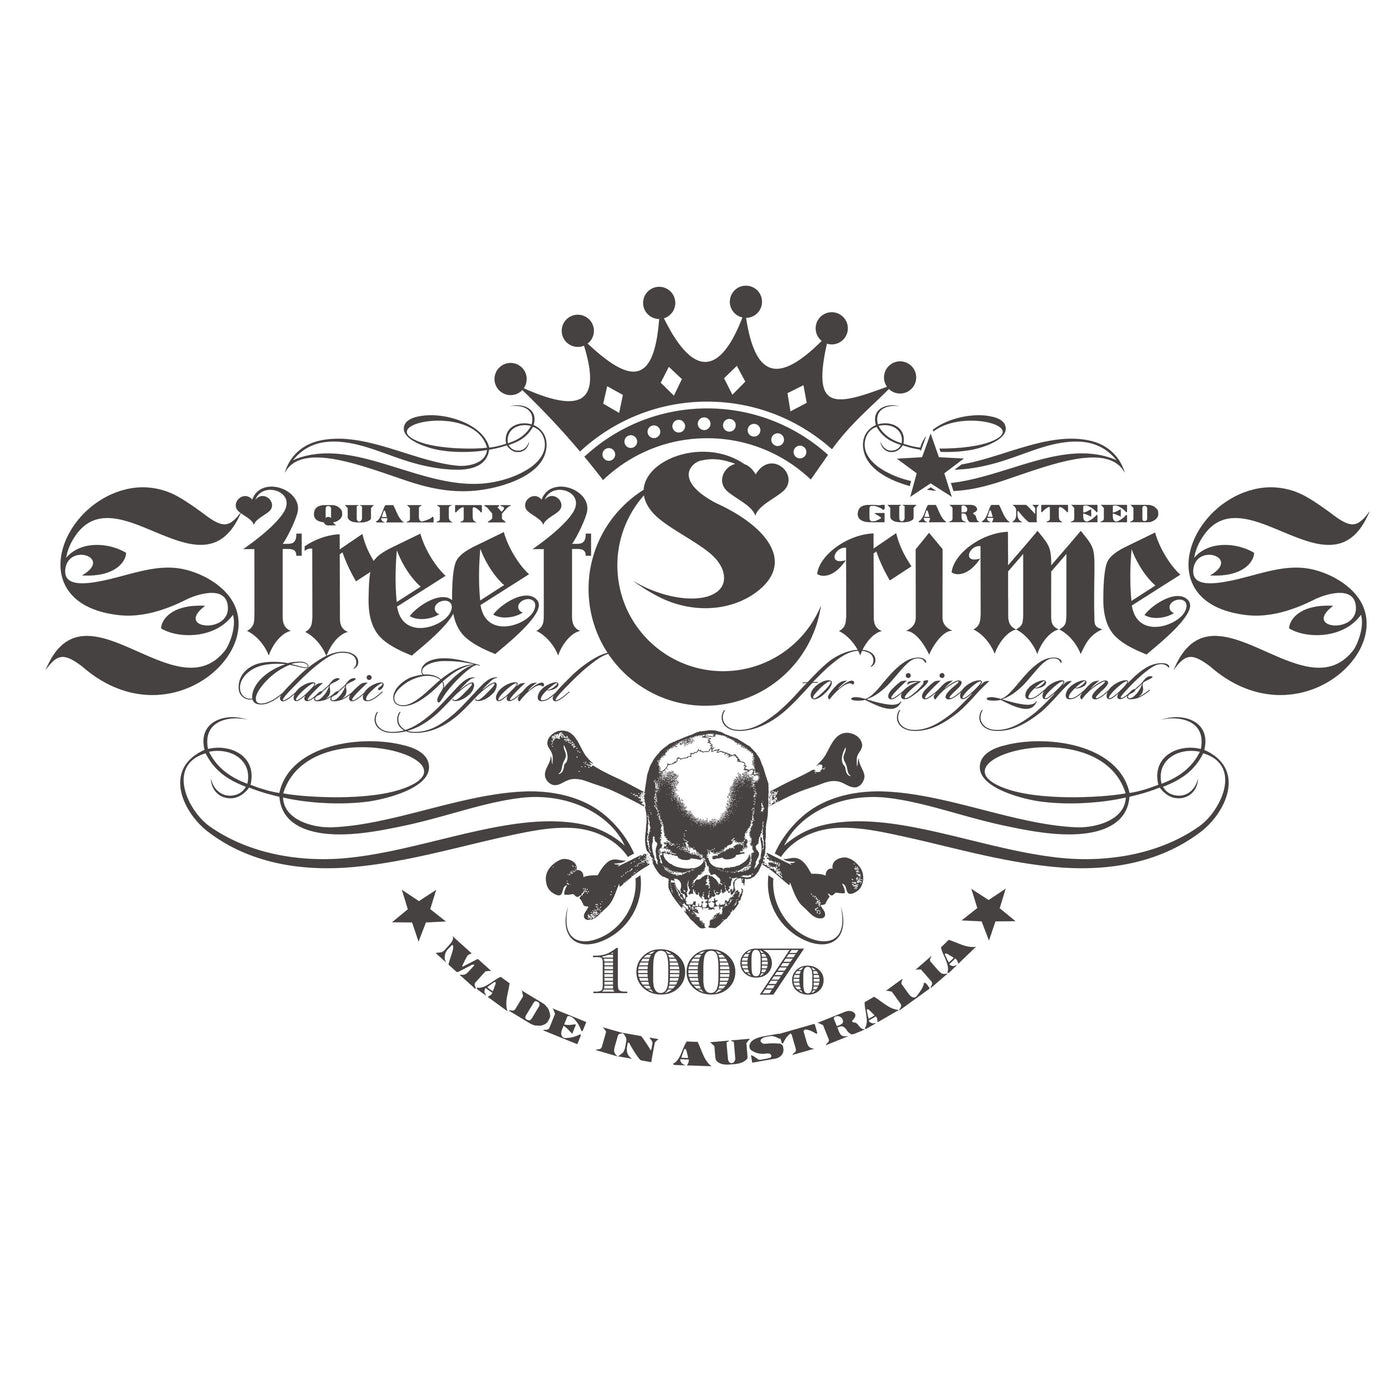 StreetCrimes Logo - NEW - Fem